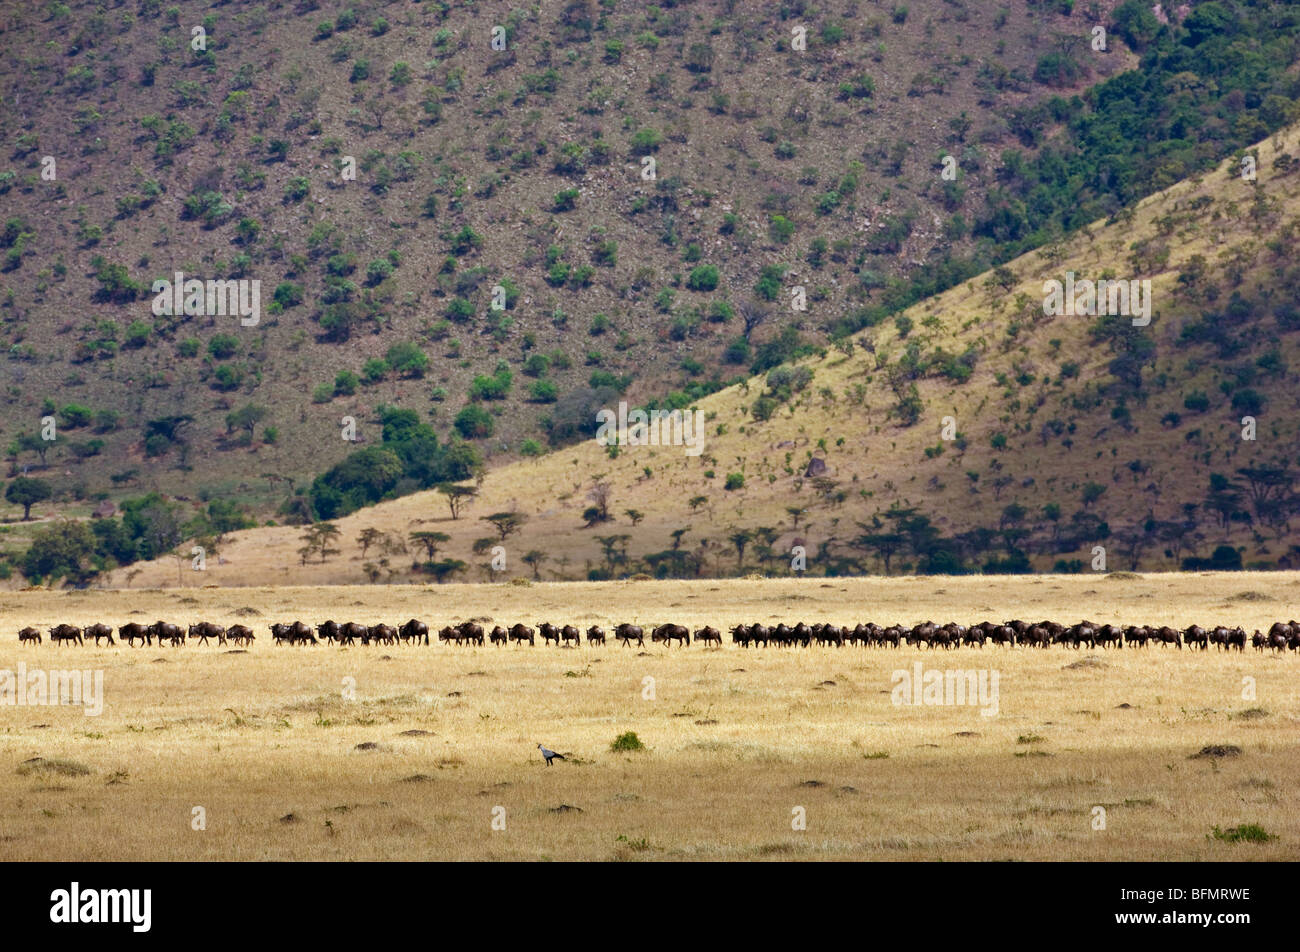 Au Kenya. Barbe blanche suivez gnu en ligne le long de l'Oloololo escarpement dans le Masai Mara National Reserve pendant la migration annuelle. Banque D'Images